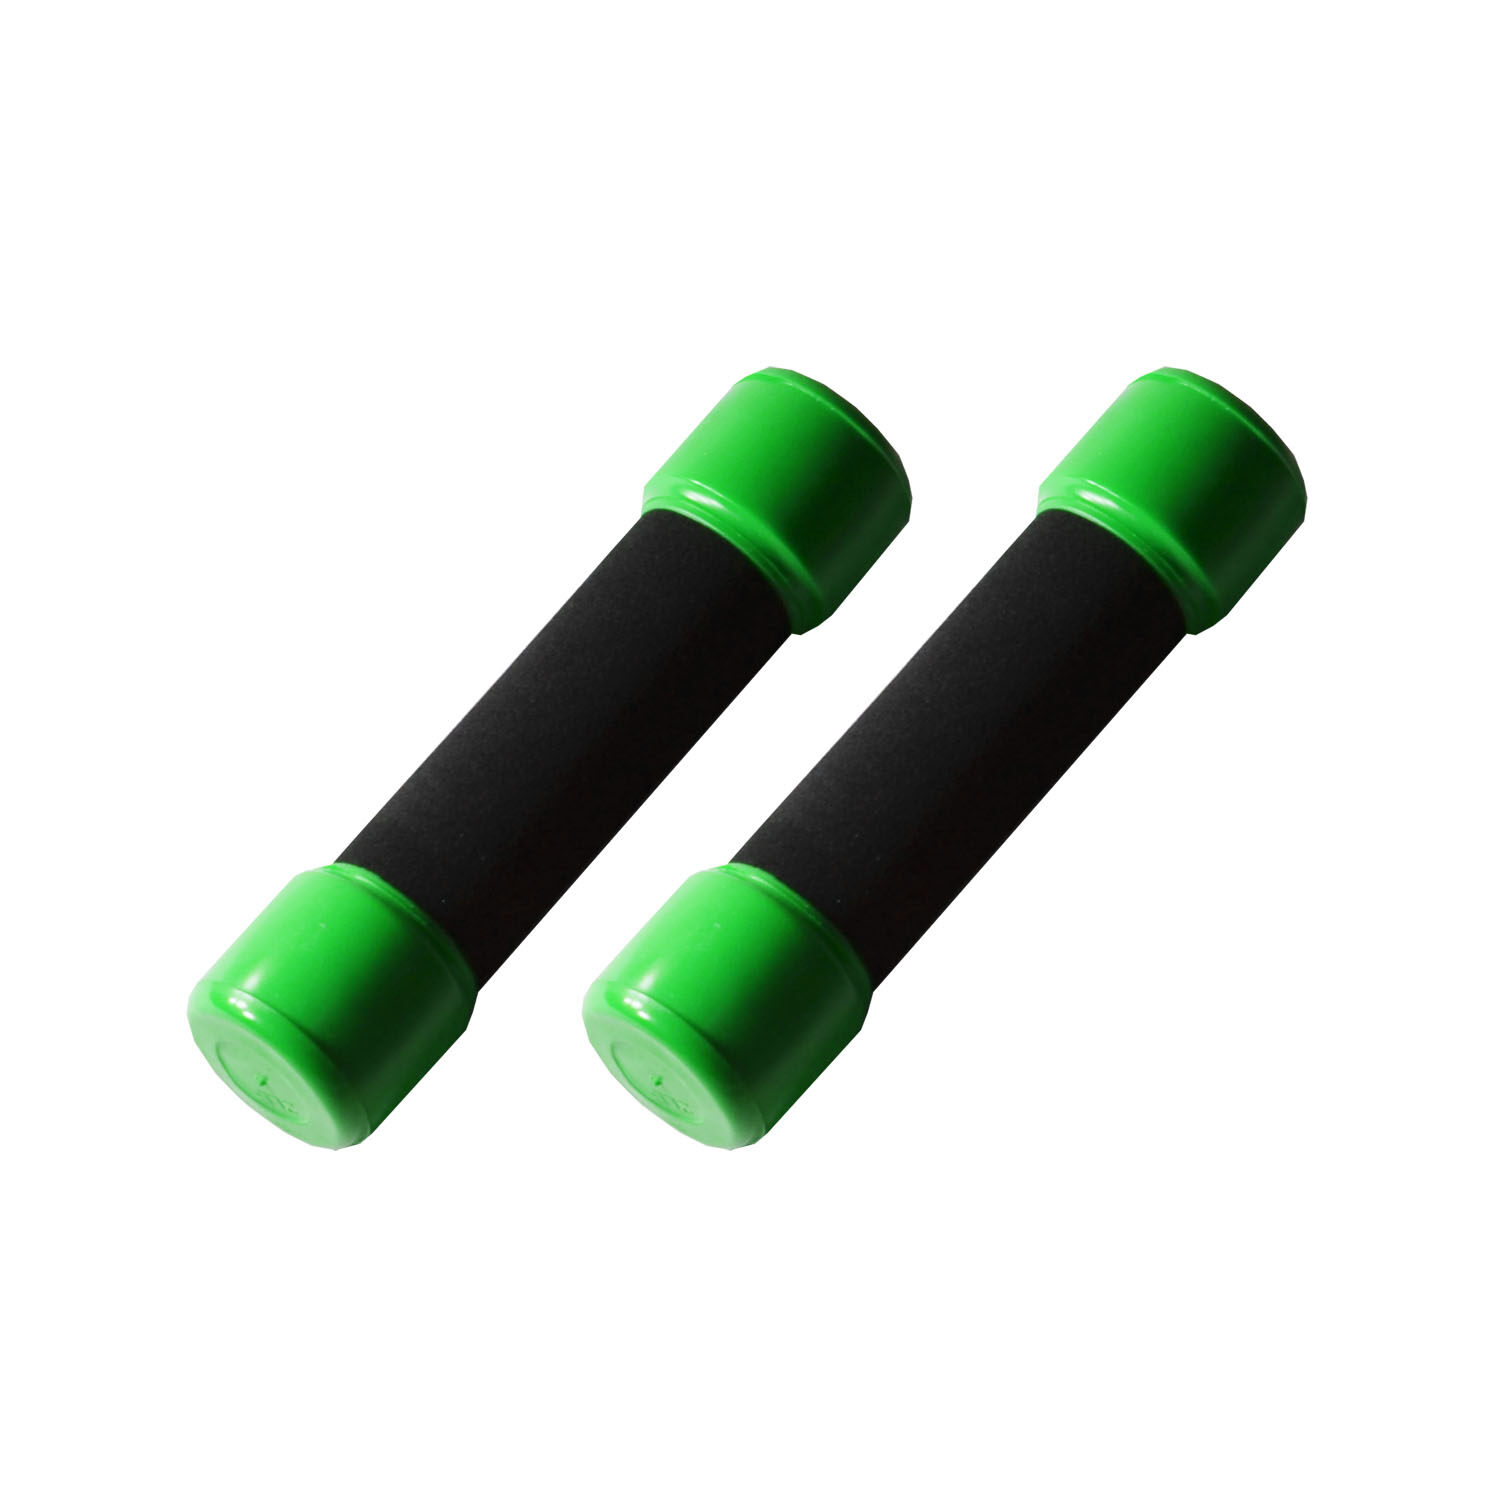 ดัมเบล ที่ยกน้ำหนัก  3 LB (1.5 kg) หุ้มพลาสติก ดรัมเบล - สีเขียว 1 คู่ / Pair of Dumbbell 3 LB (1.5 kg) - Green